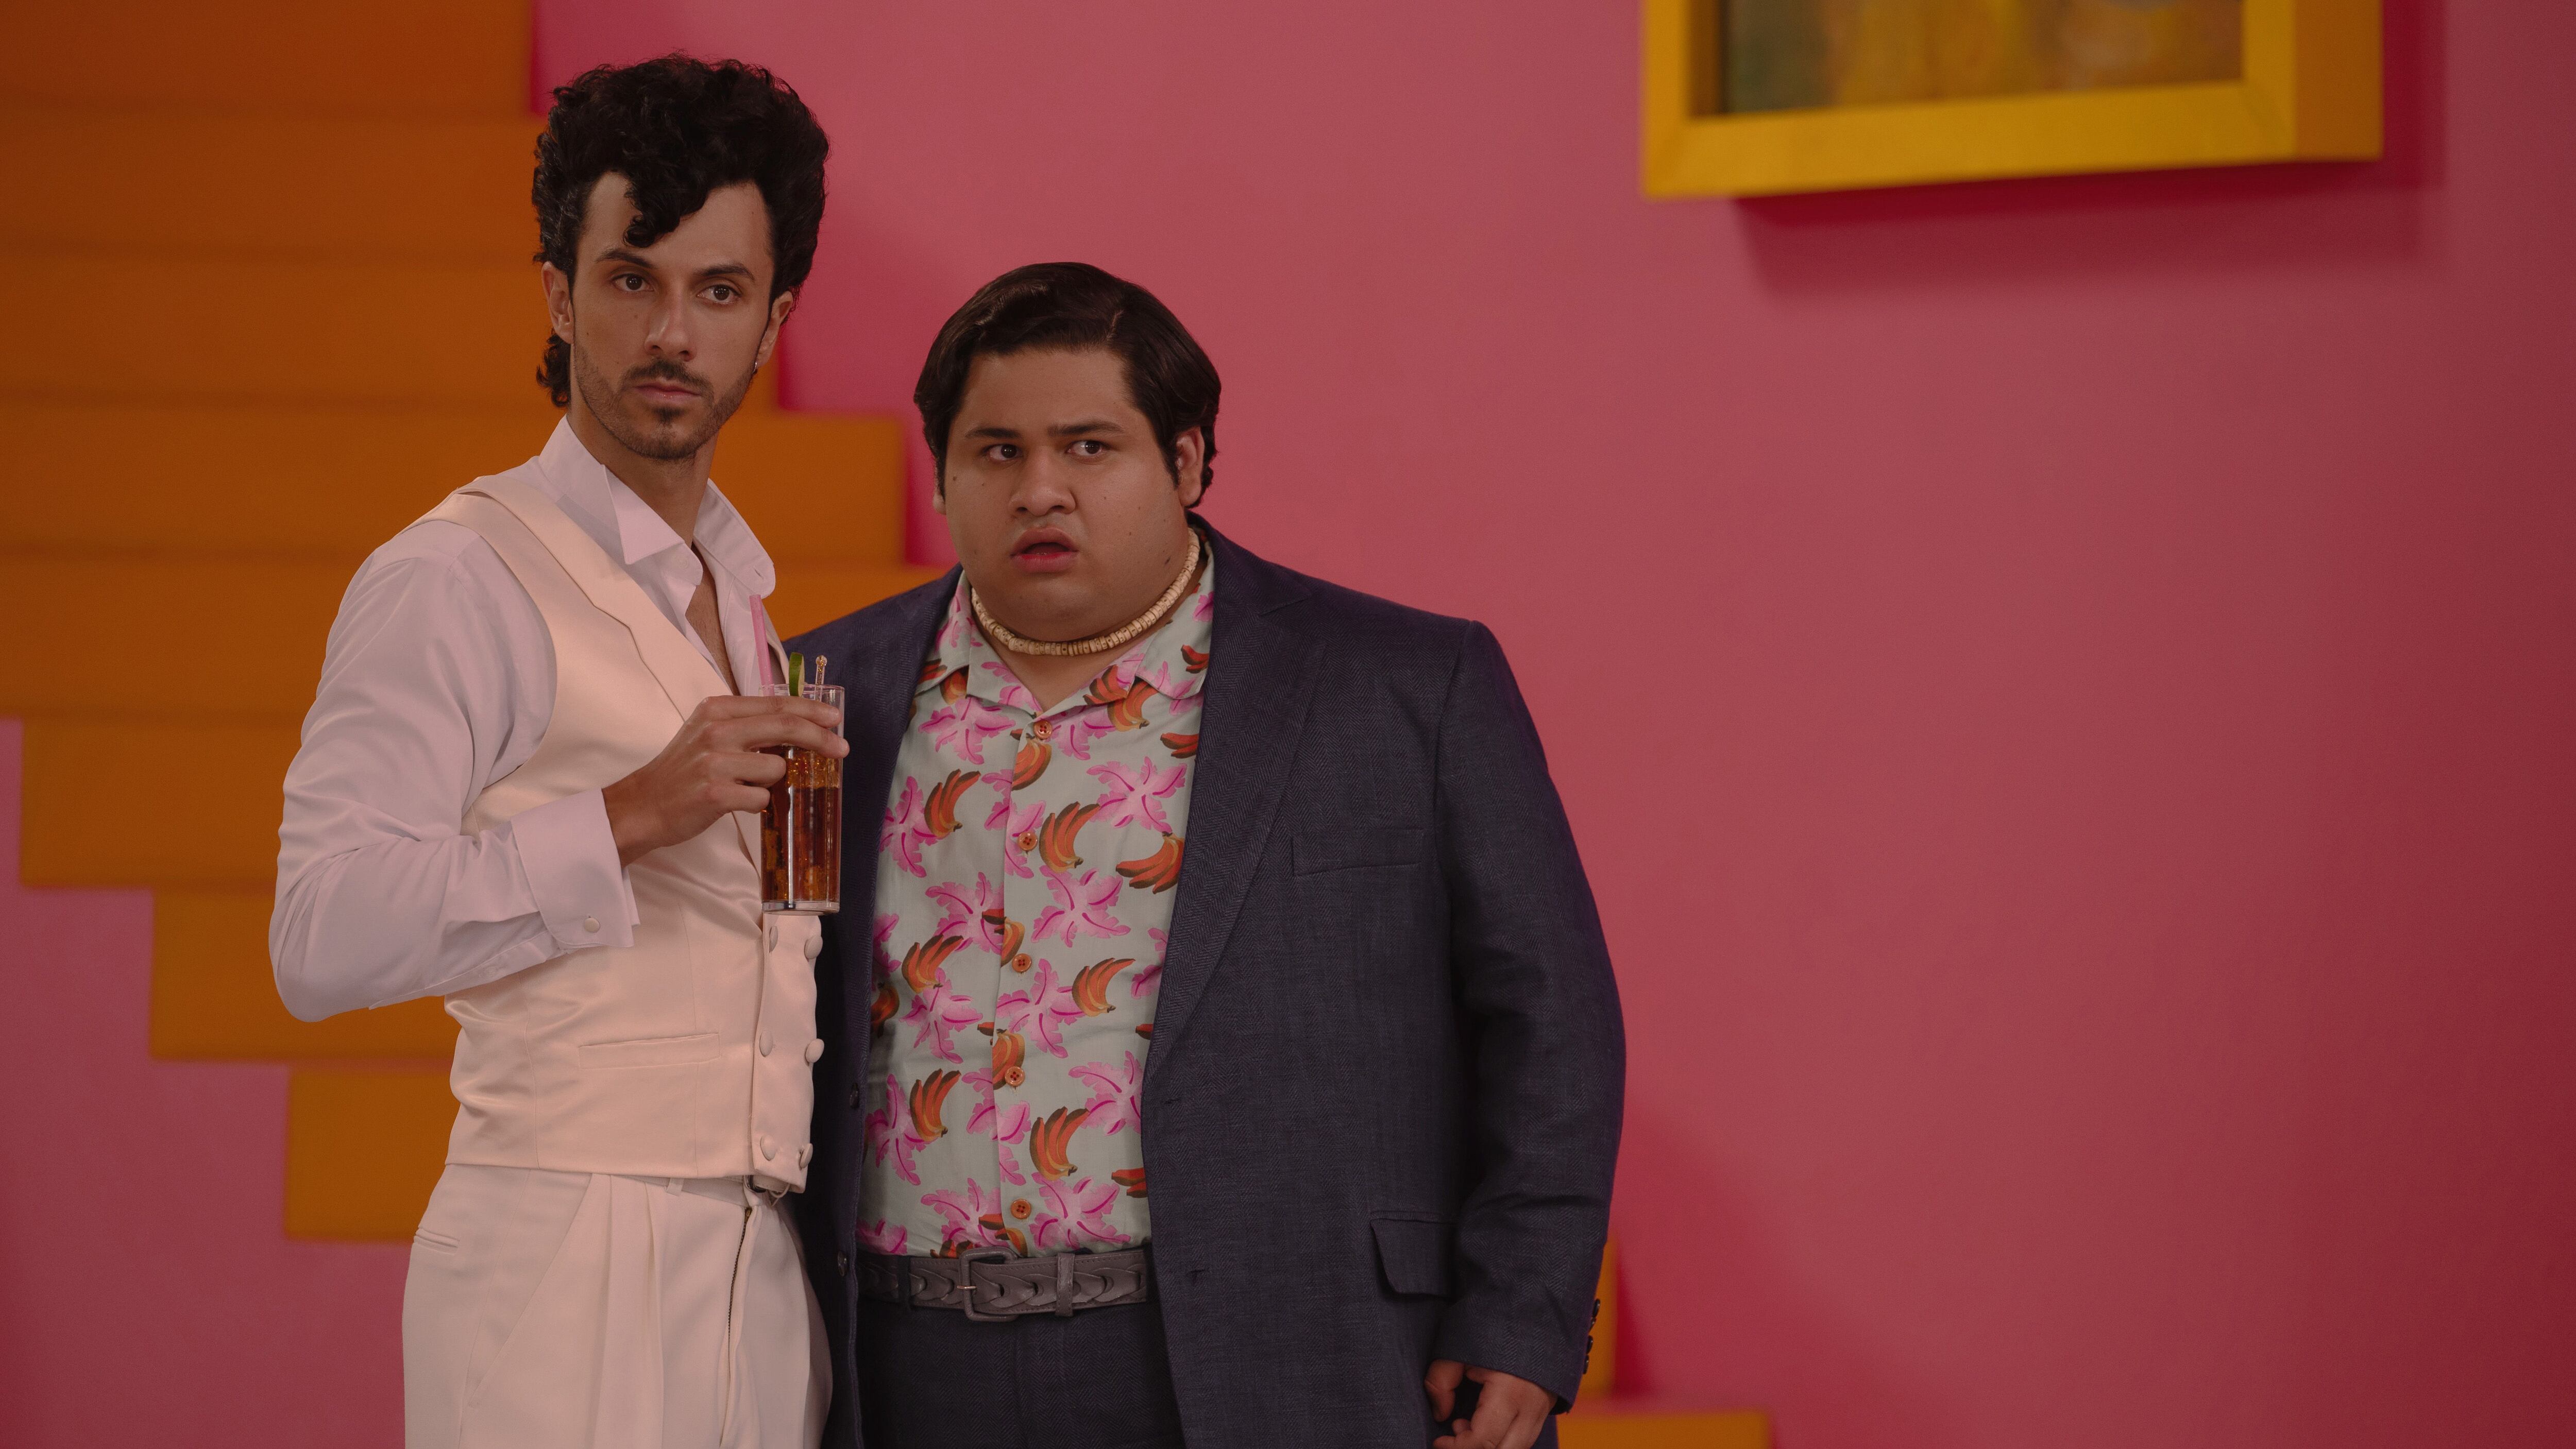 El actor español Rafael Aranda y el actor mexicano Fernando Carsa son Héctor y Memo en "Acapulco".